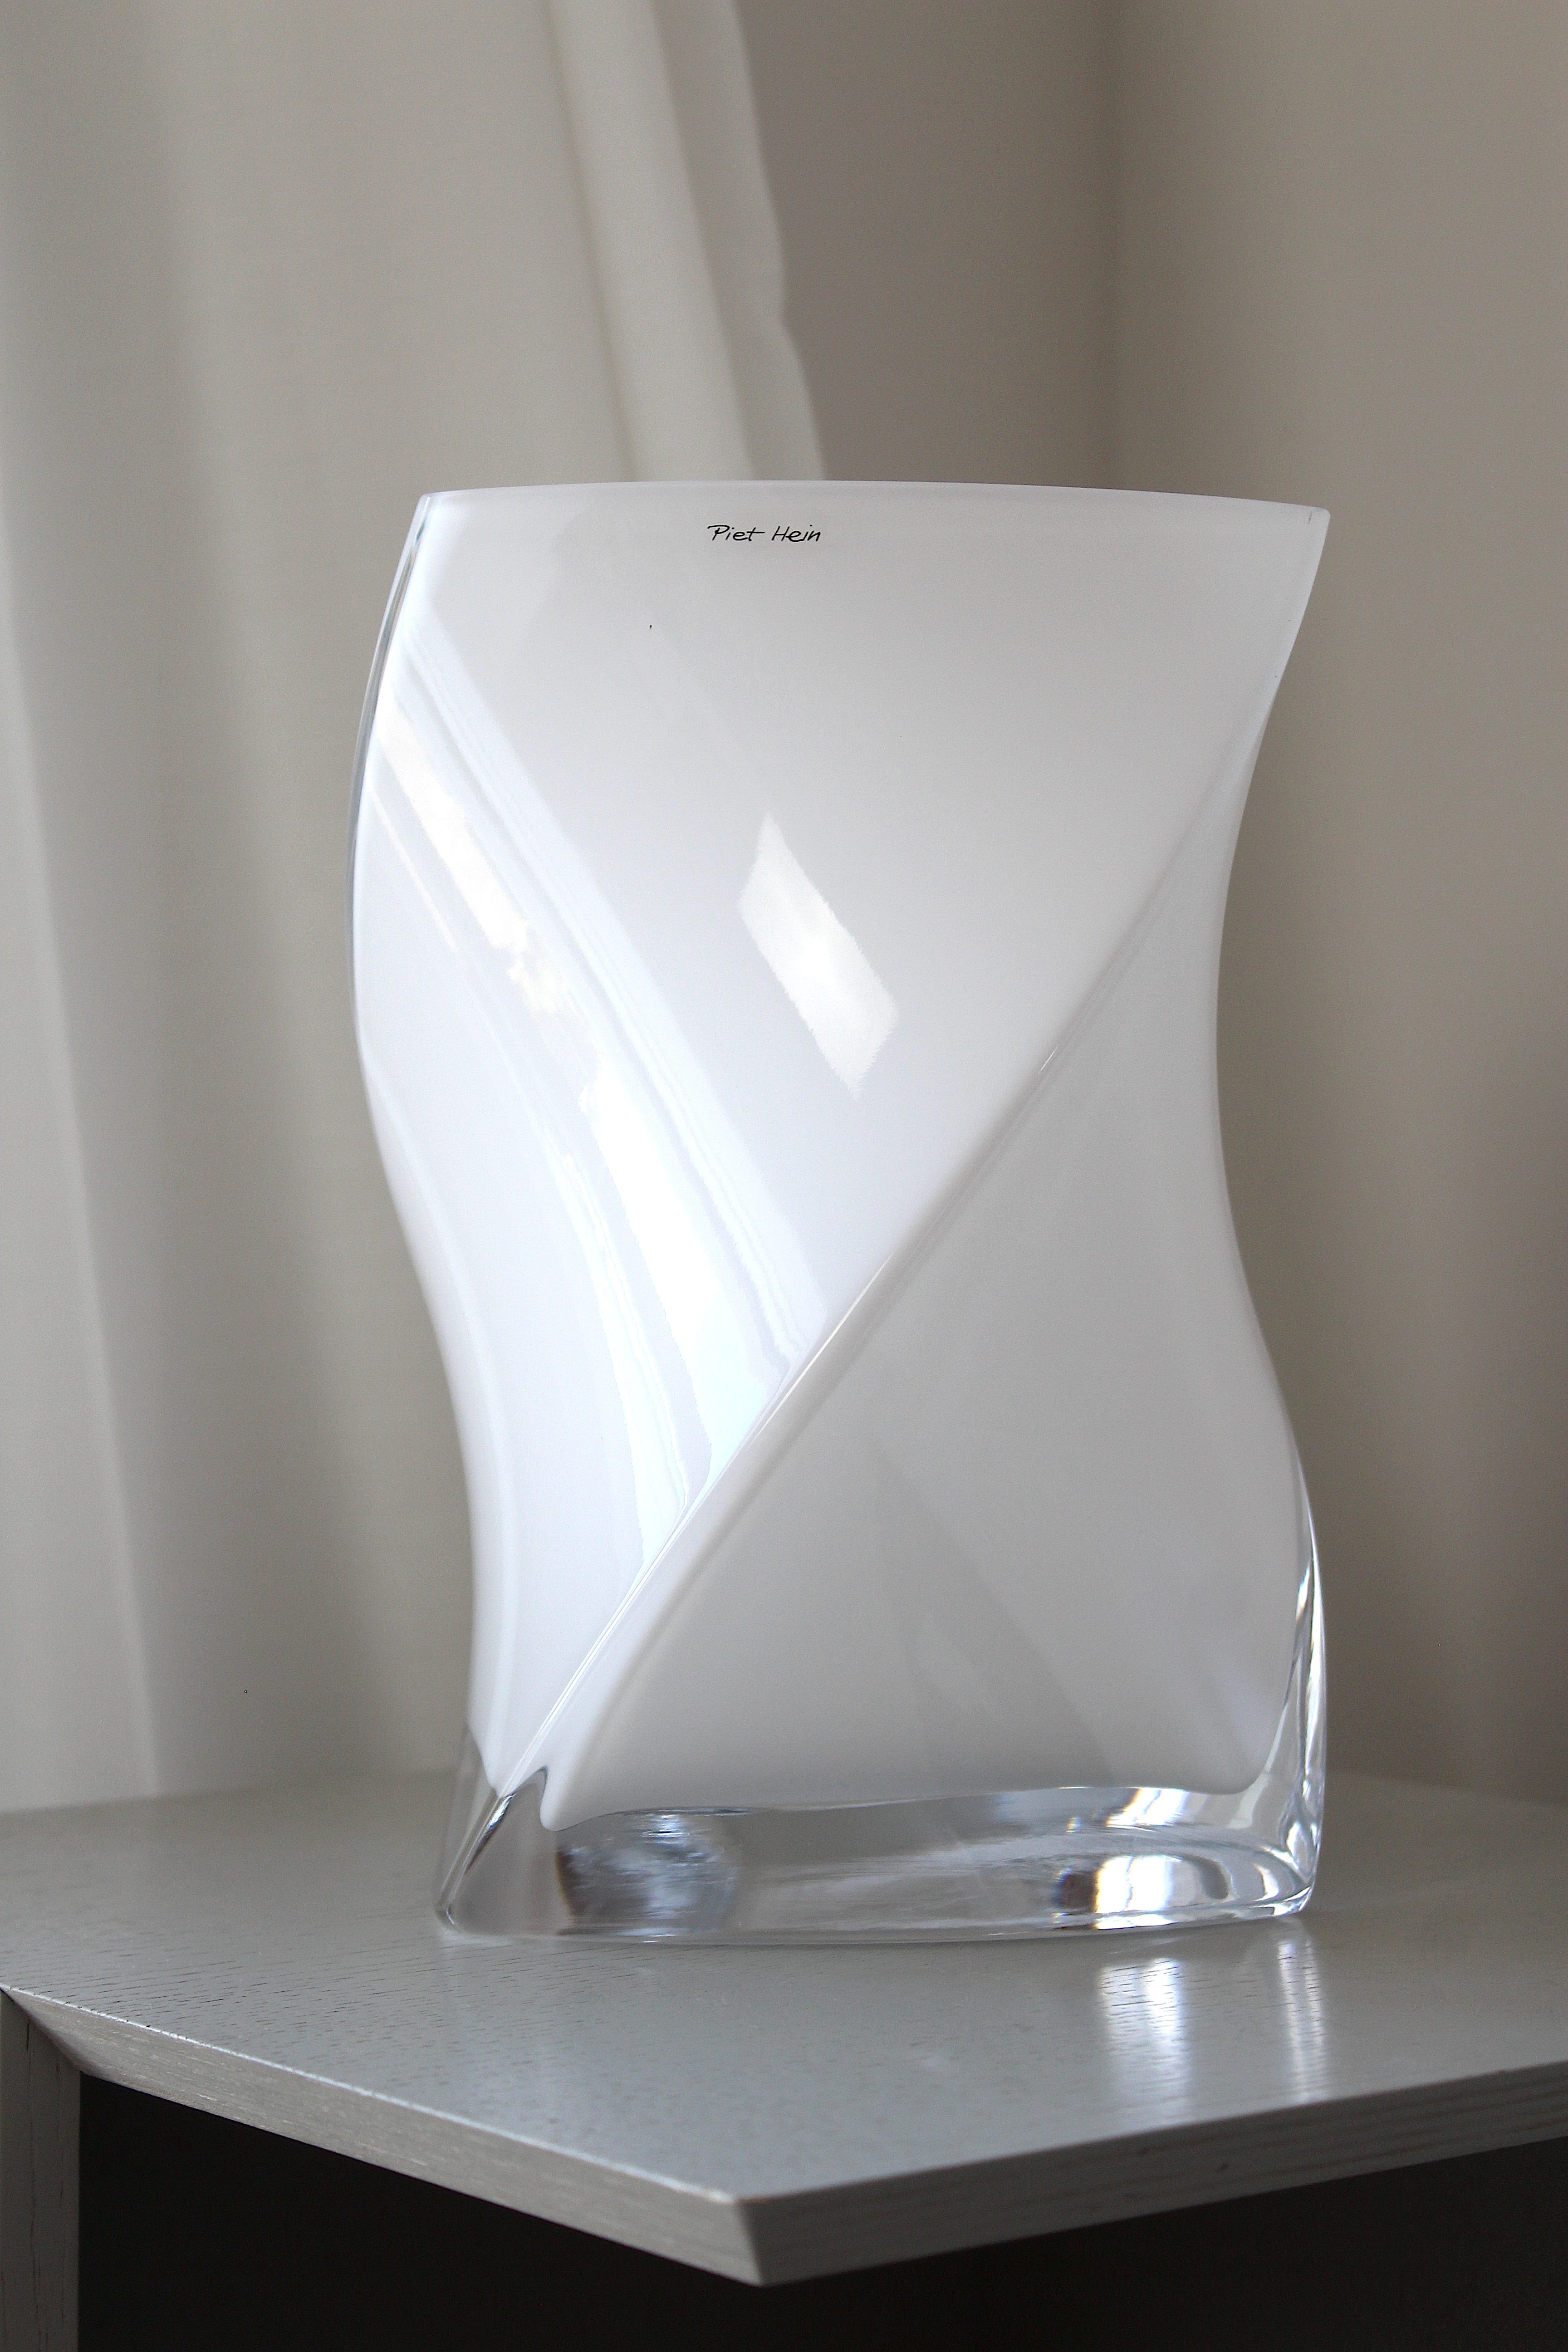 Piet Hein - Twister vase, 24 cm. Opal